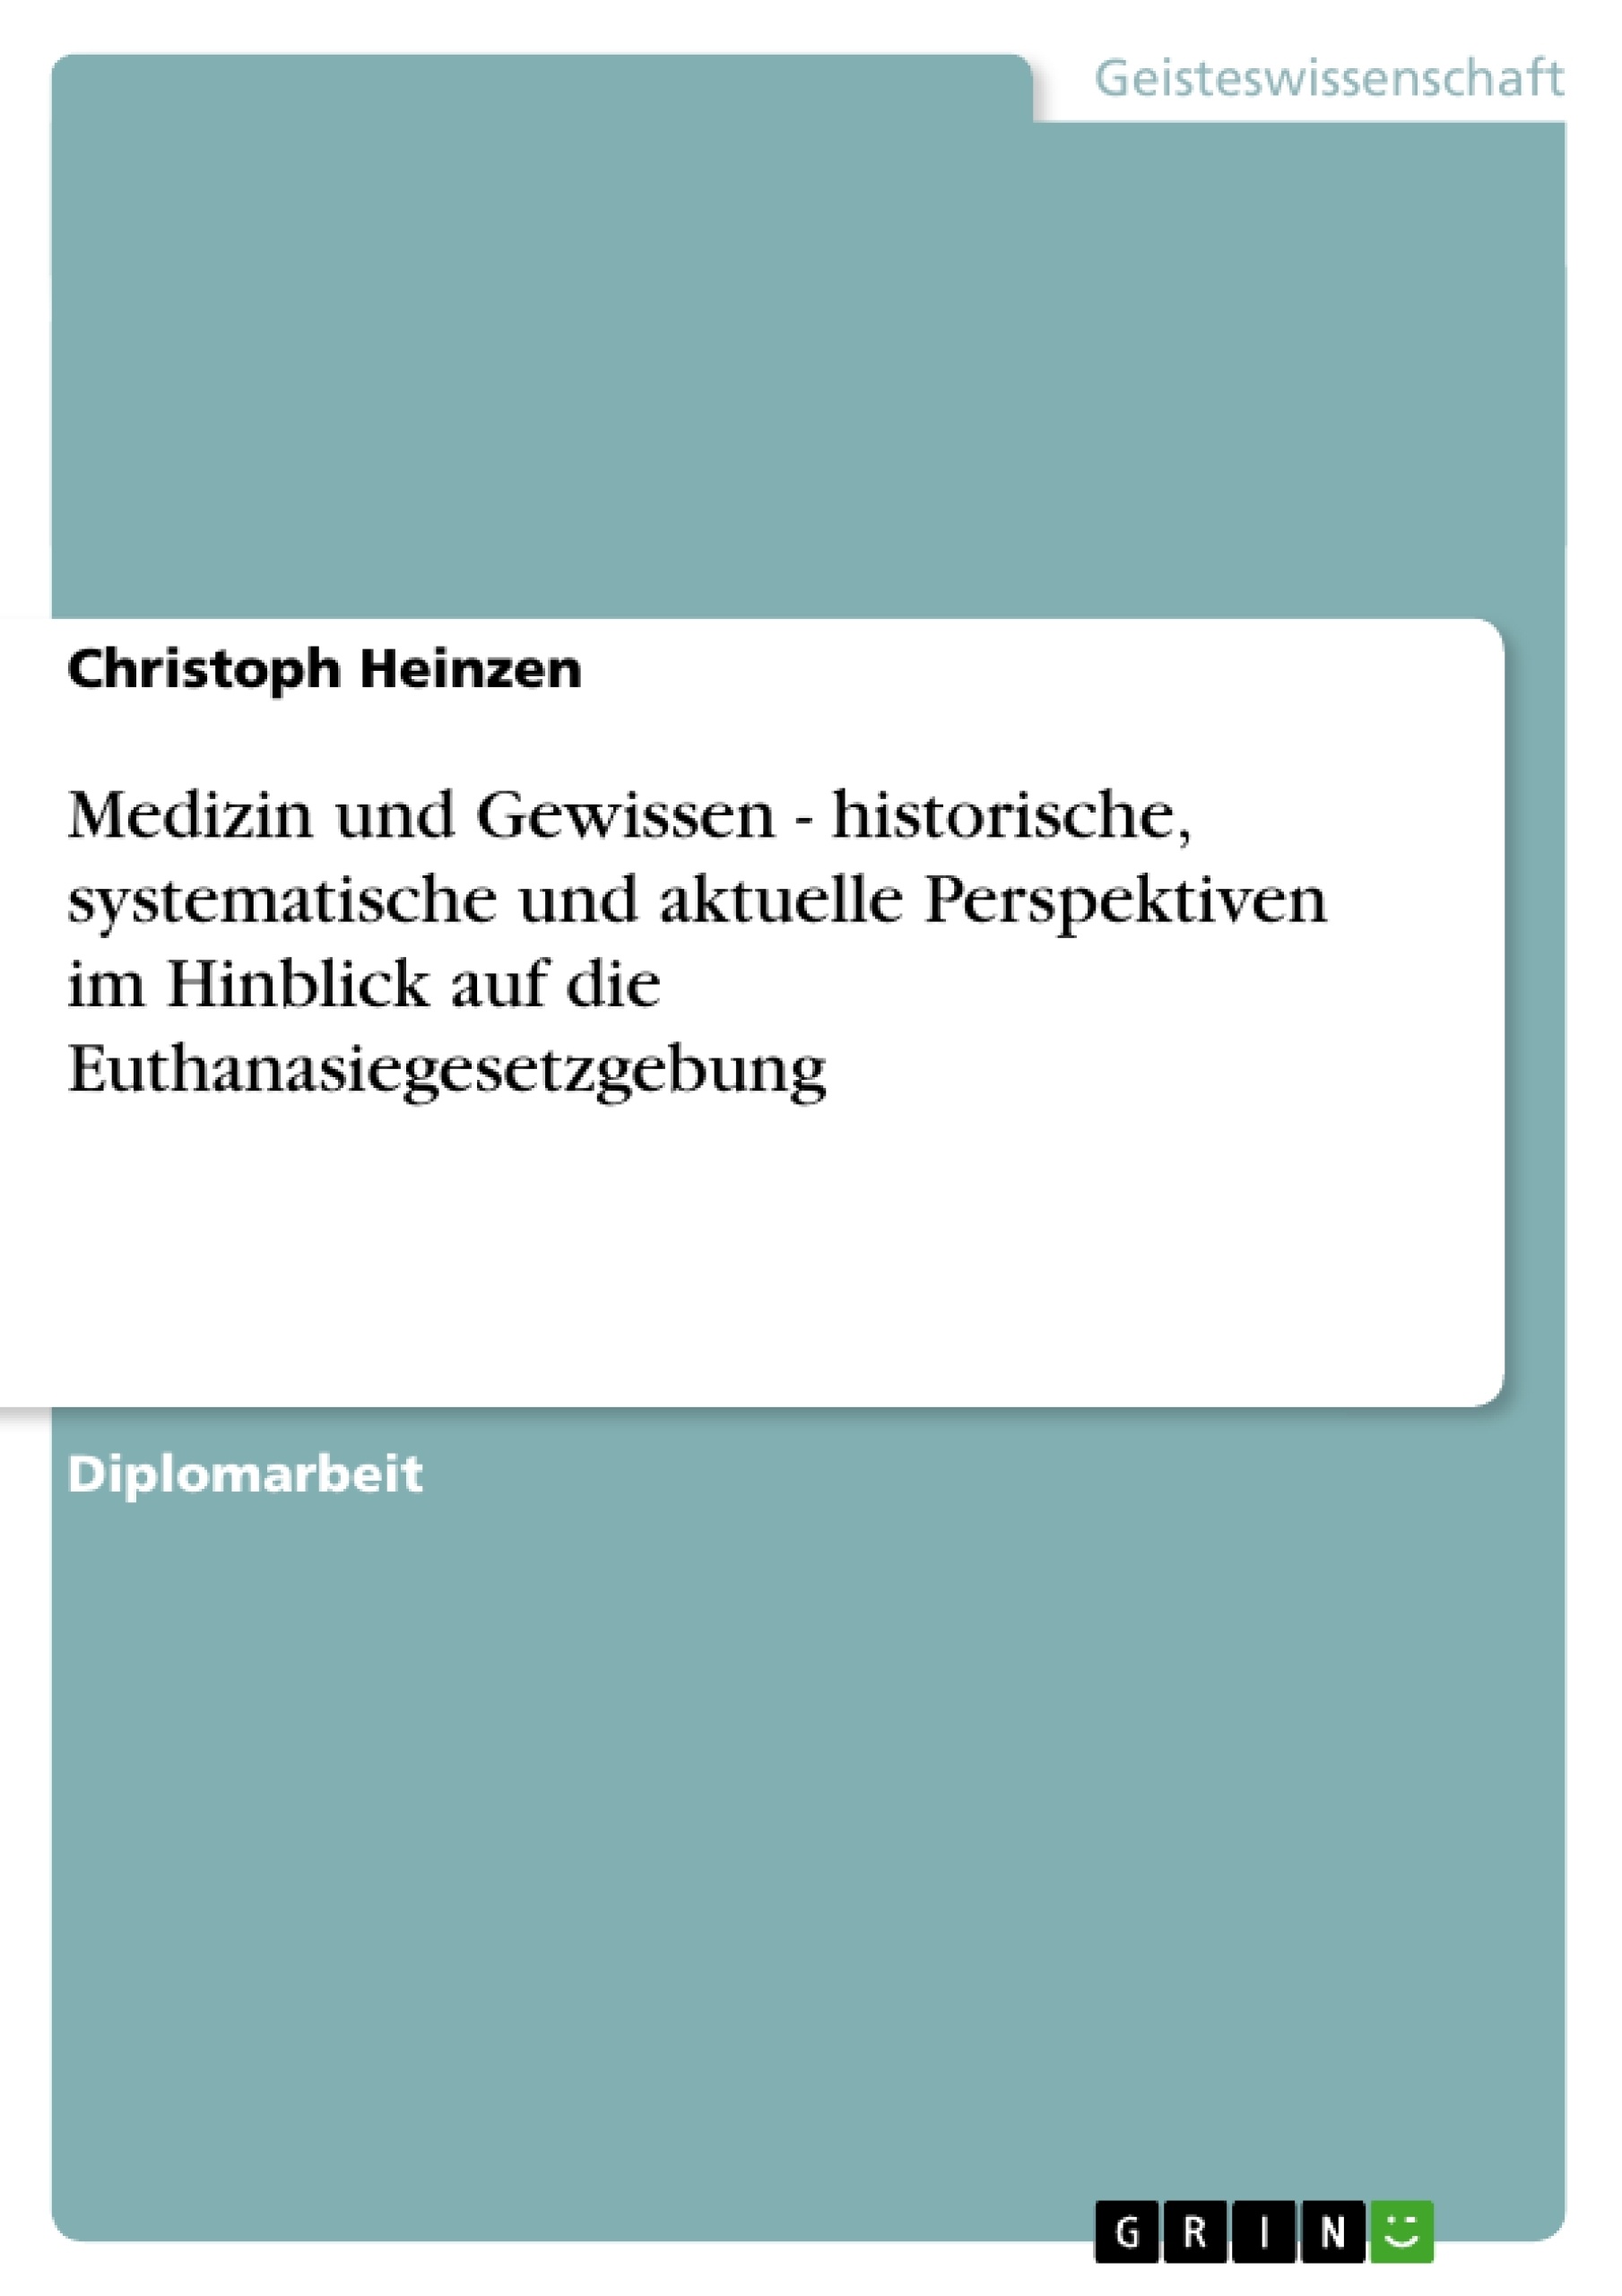 Title: Medizin und Gewissen  - historische, systematische und aktuelle Perspektiven im Hinblick auf die Euthanasiegesetzgebung